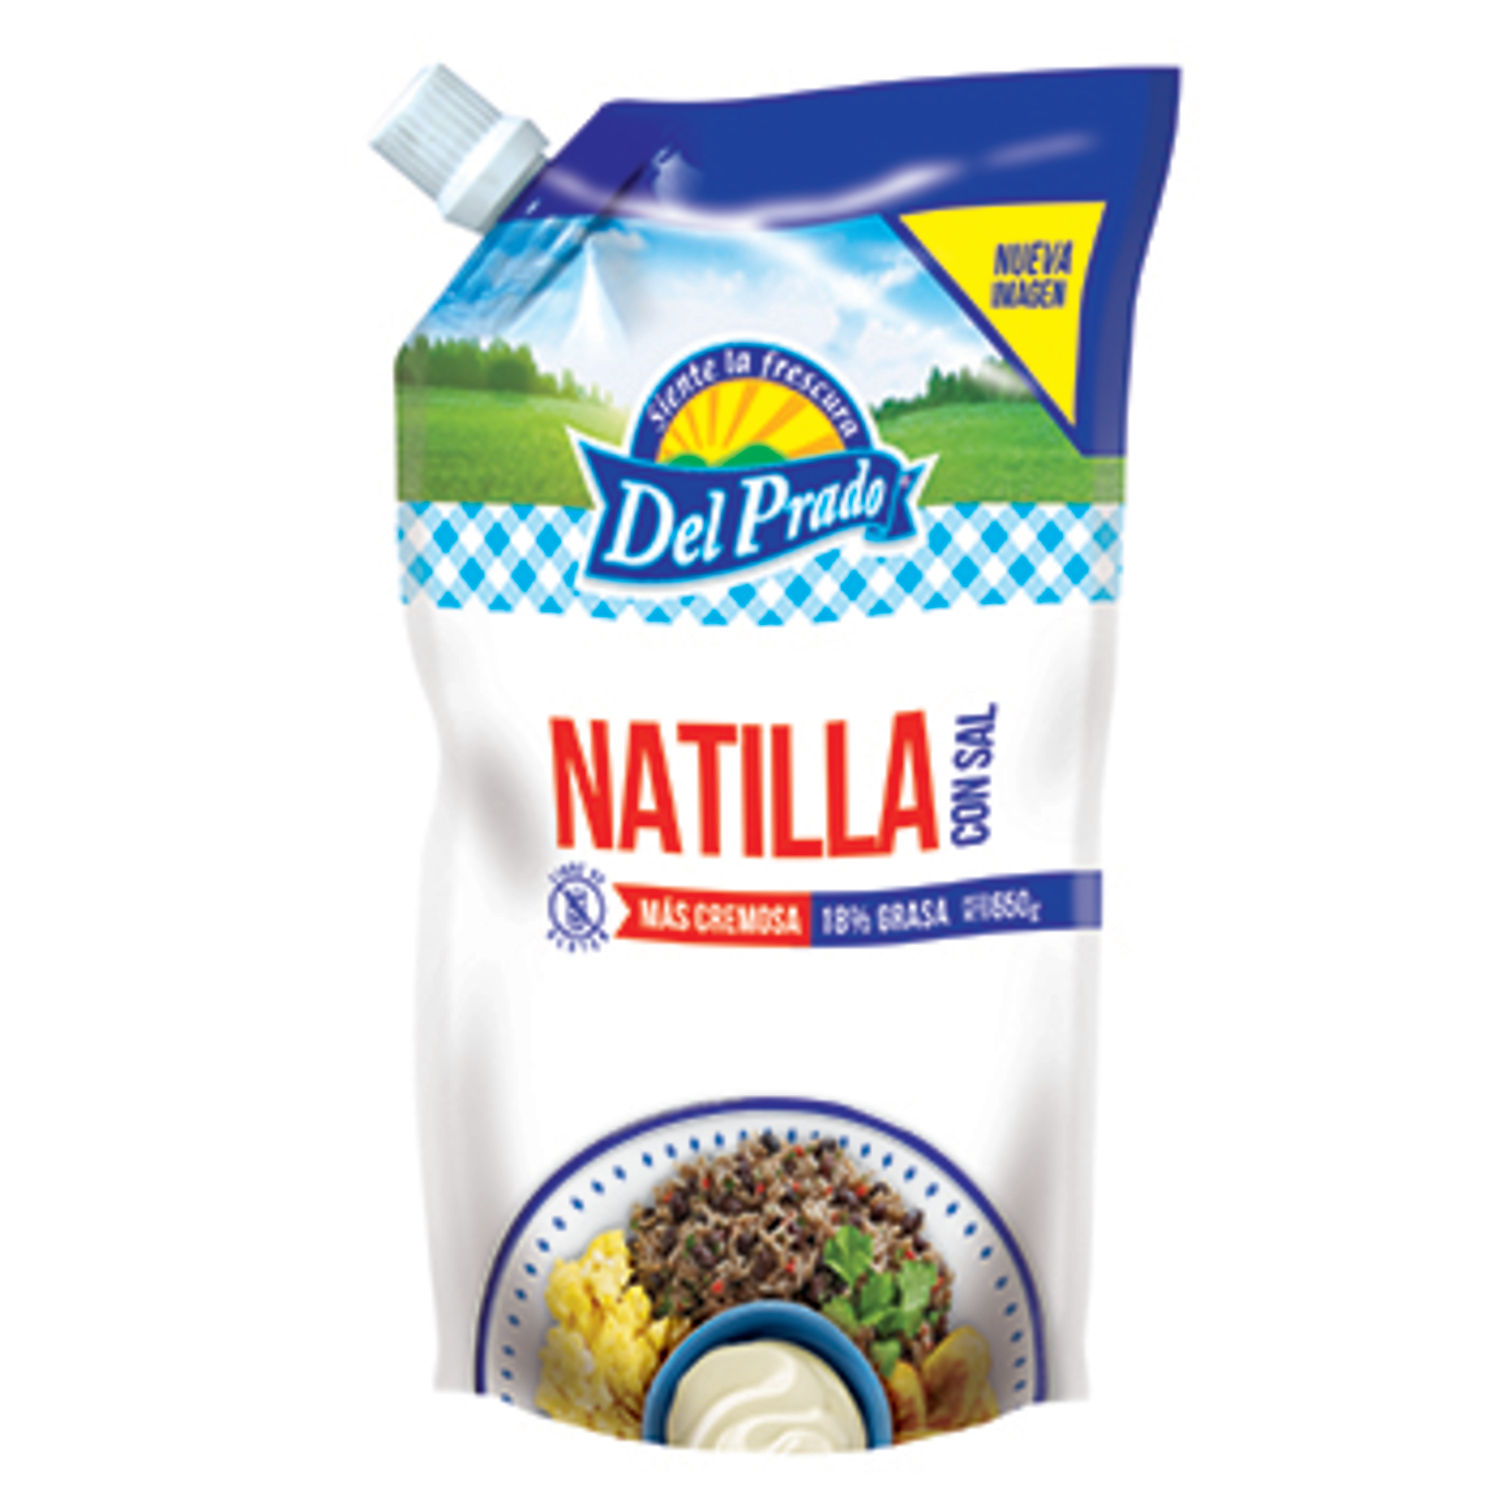 Natilla Con Sal Del Prado Paquete 650 G
